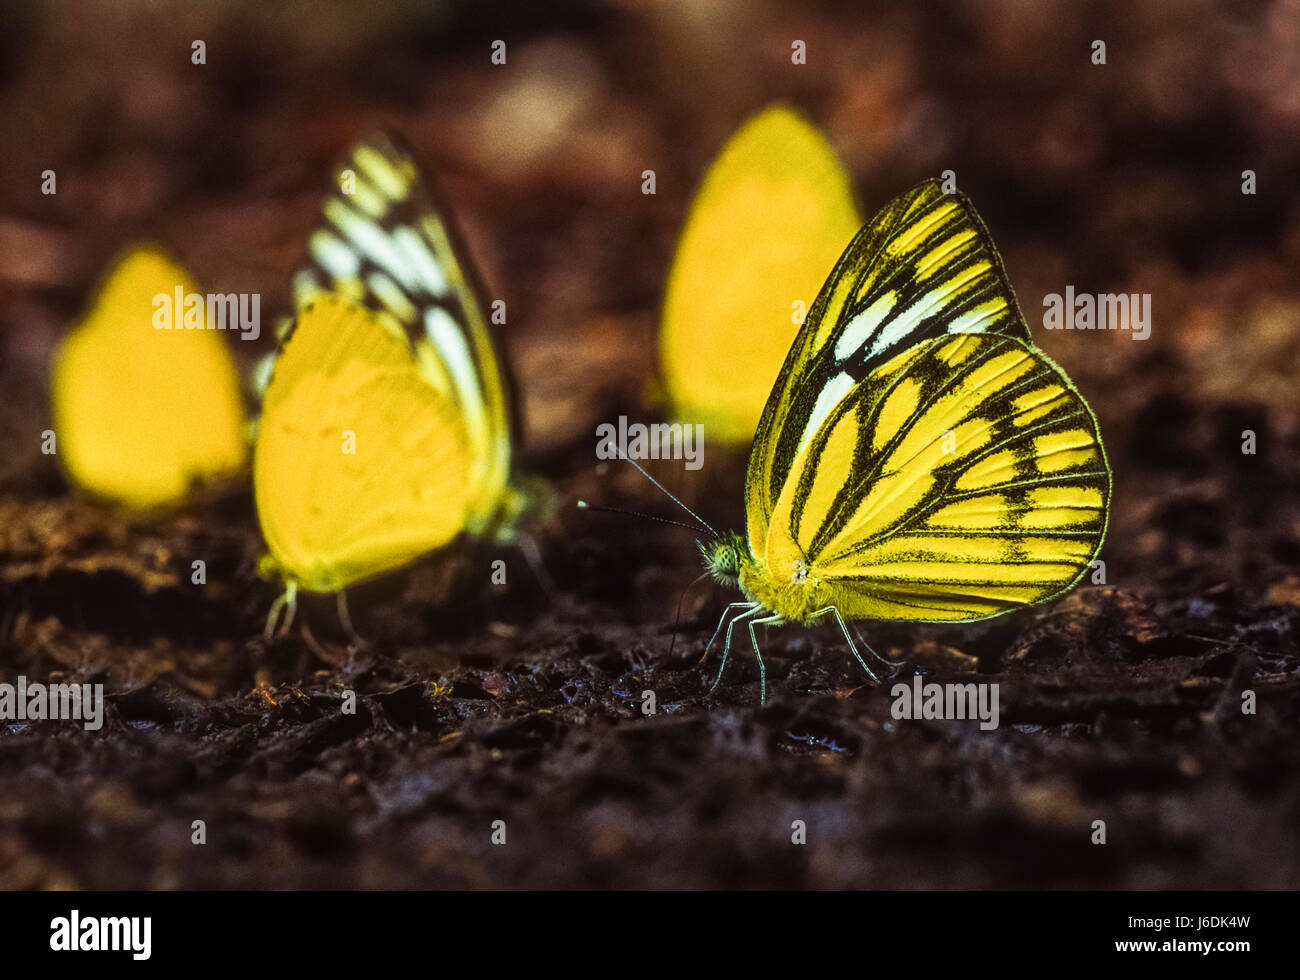 Pionnier des Indiens et l'herbe commune papillons jaune, Belenois aurota aurota et Eurema hécube hécube, parc national de Keoladeo Ghana, Rajasthan, Inde Banque D'Images